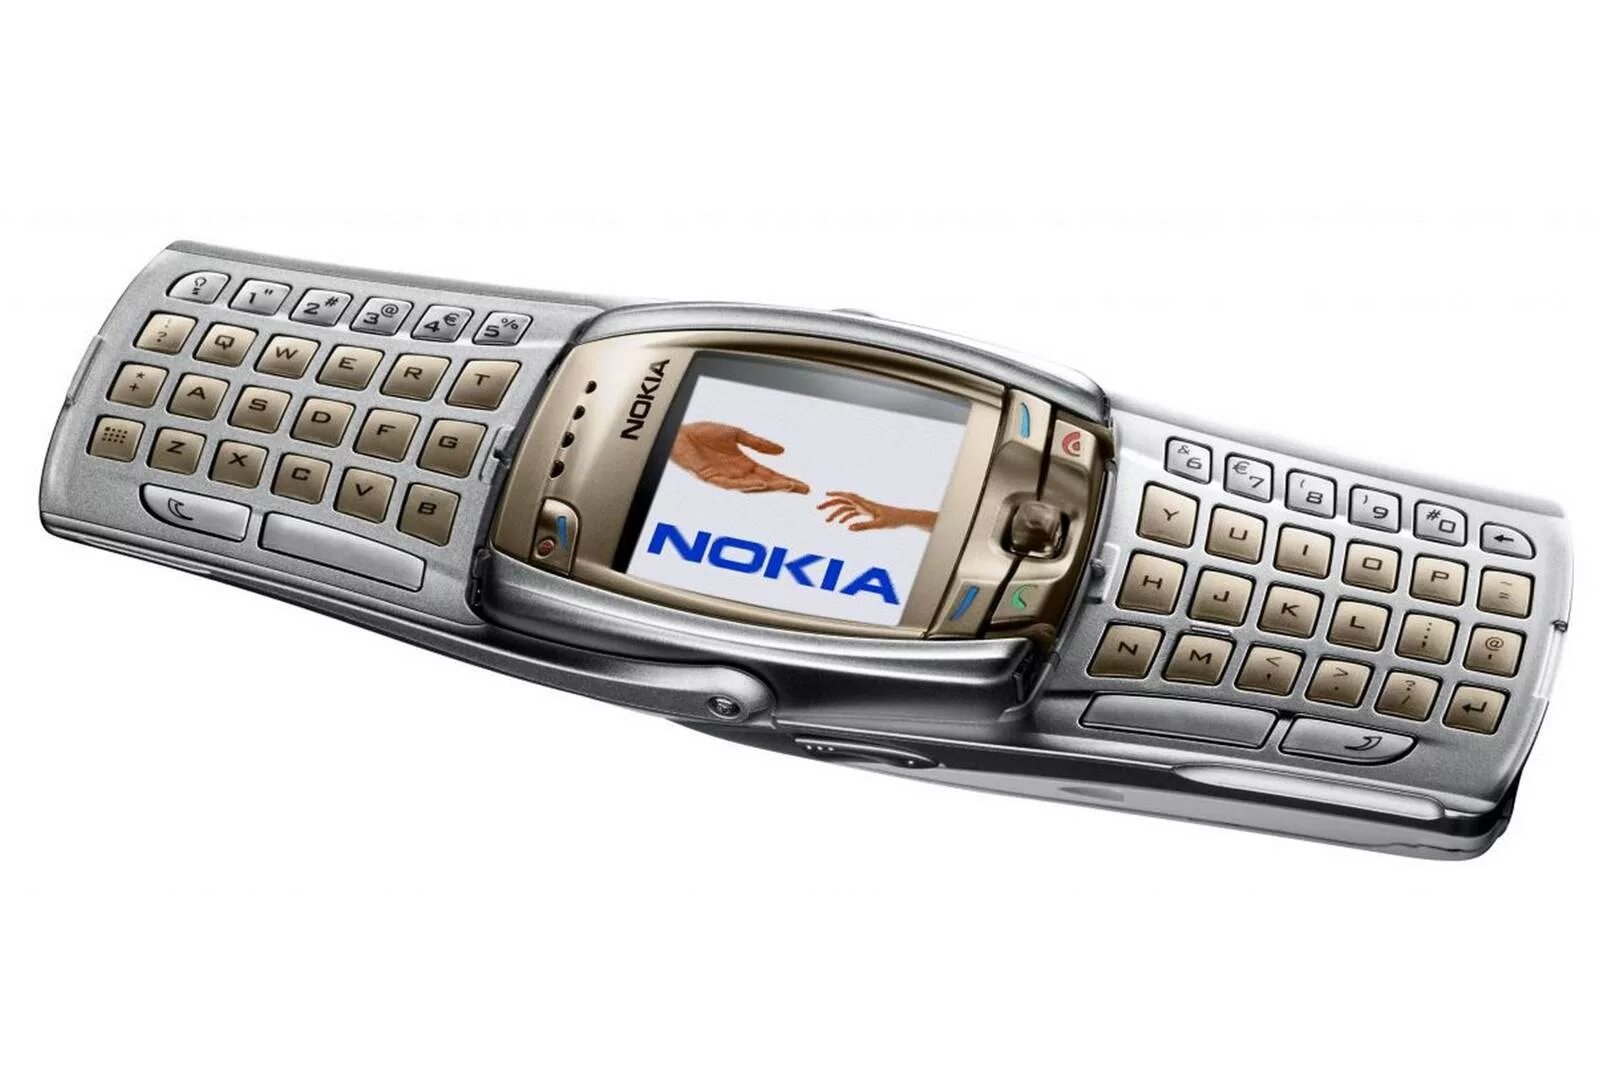 Nokia mobile phone. Нокиа 6810. Nokia 3310i. Nokia 9210. Nokia 6760s.